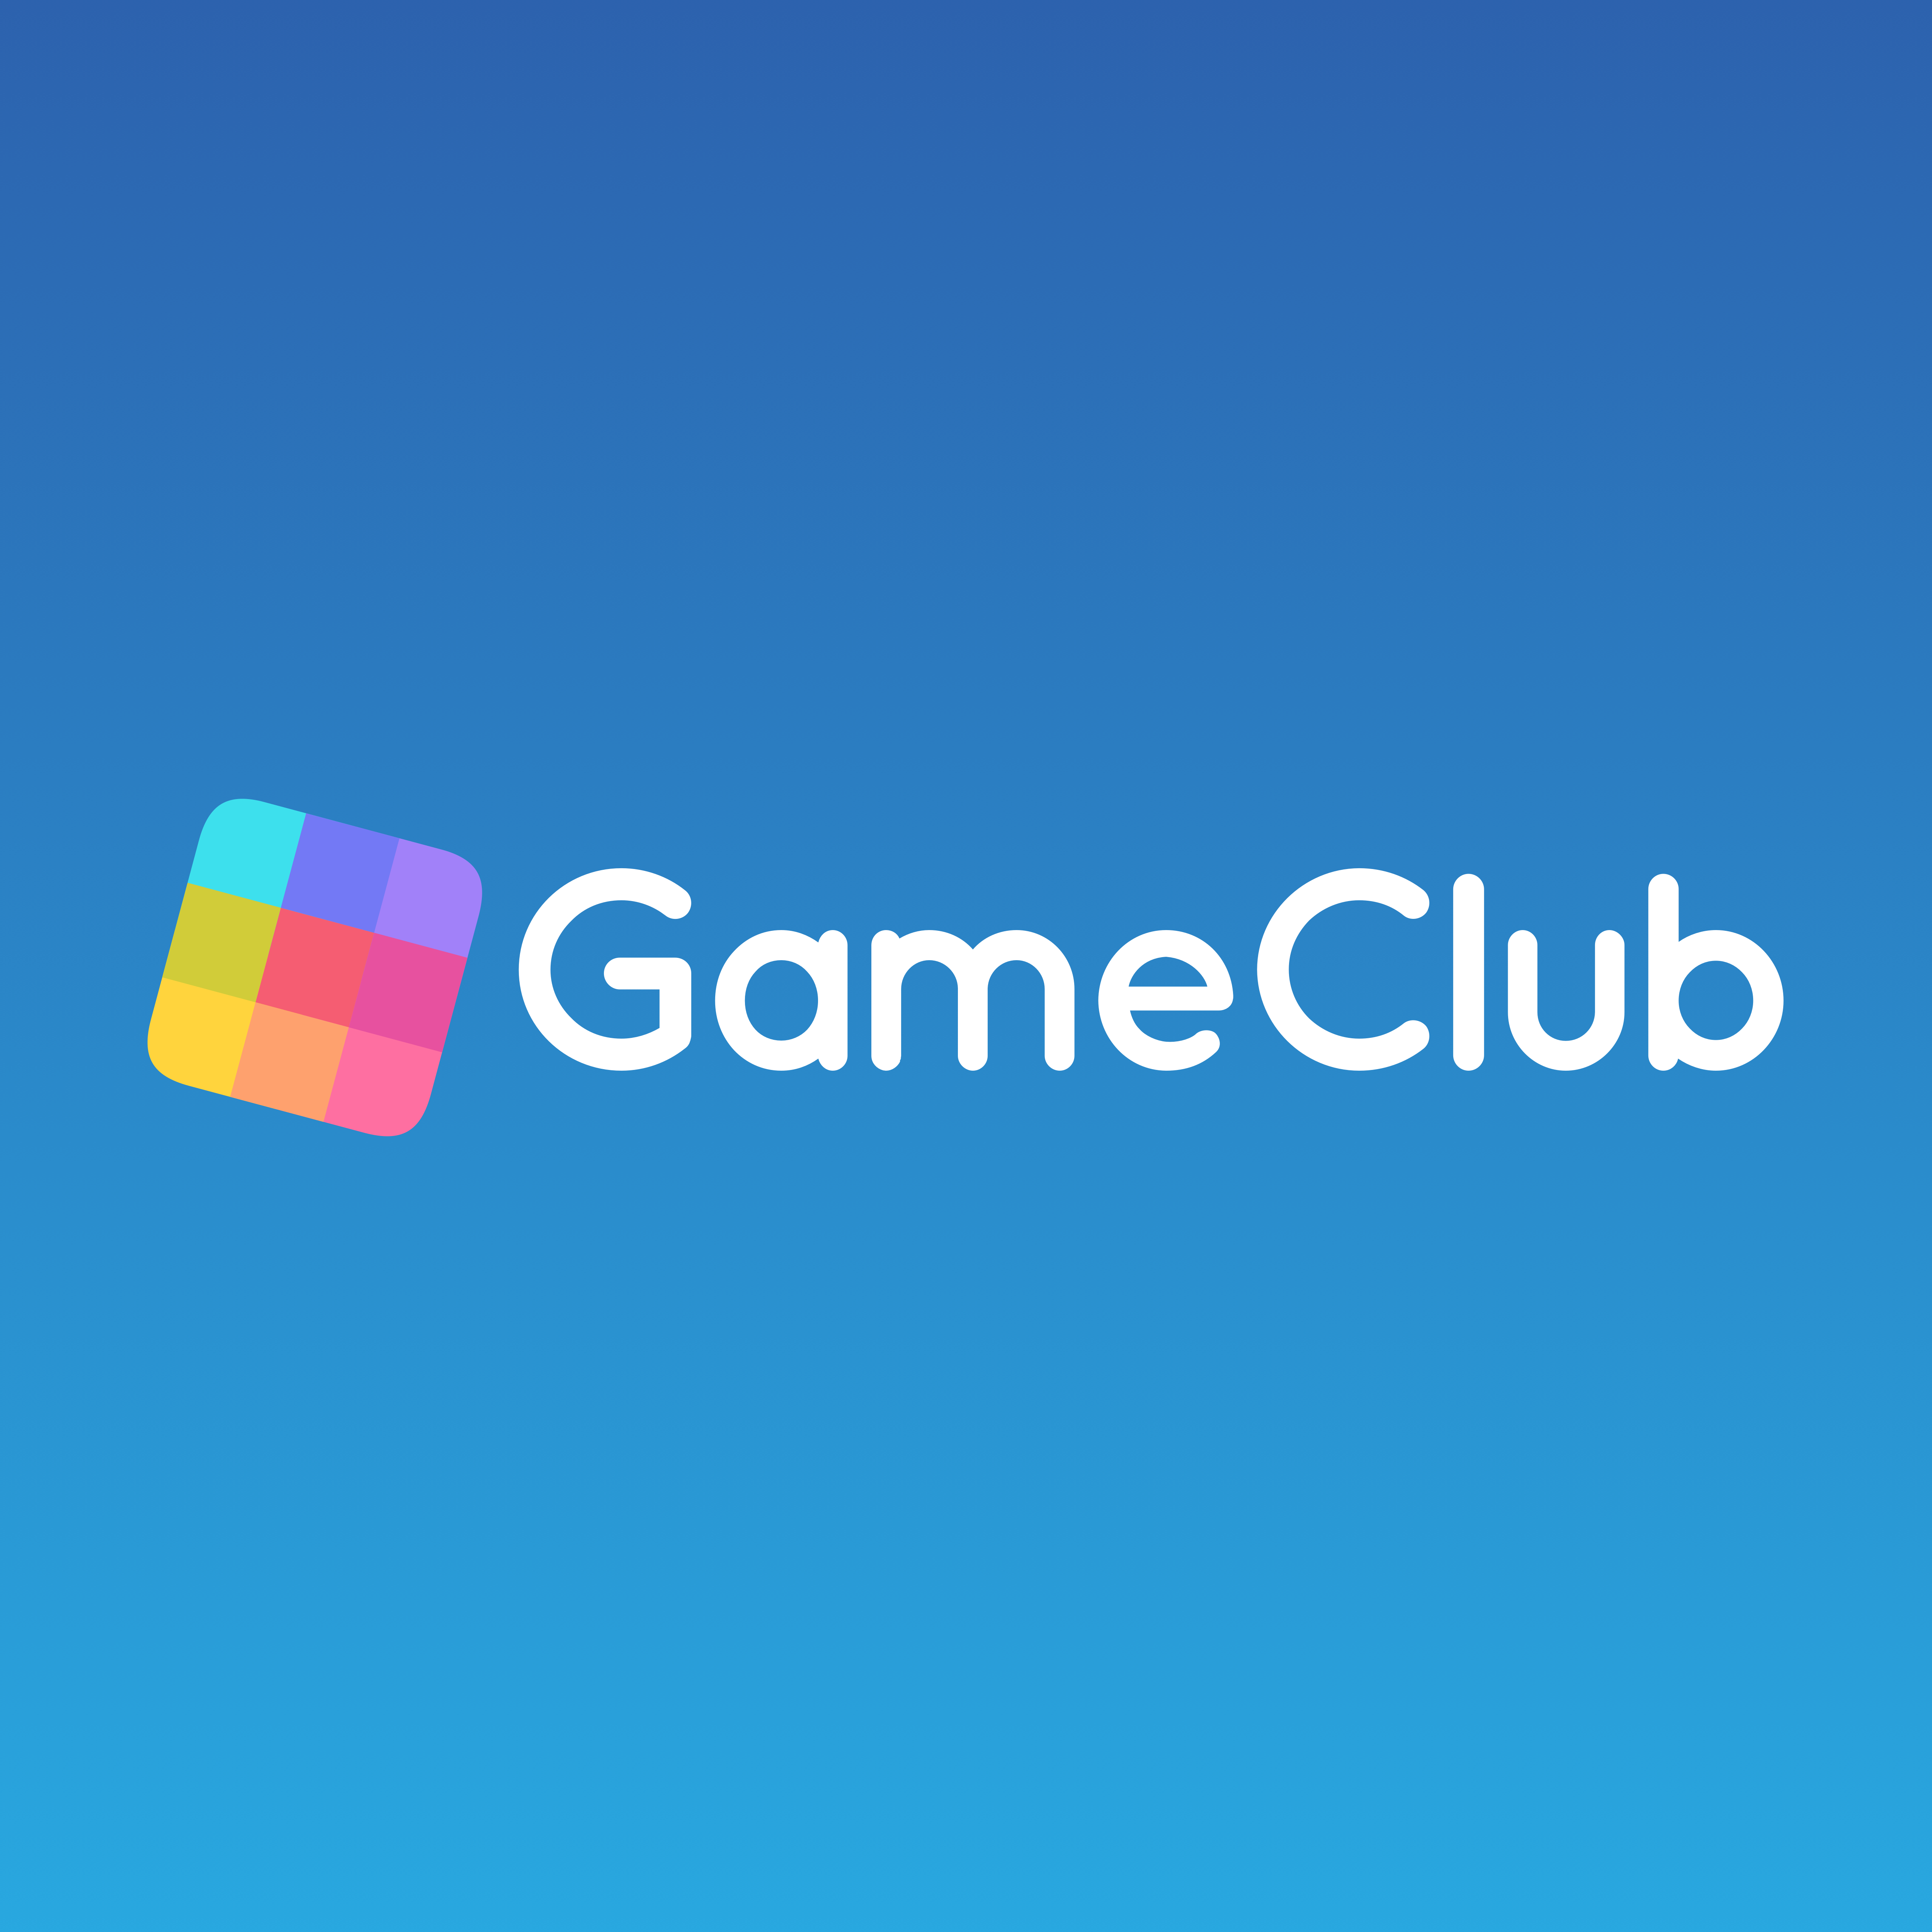 GameClub logo